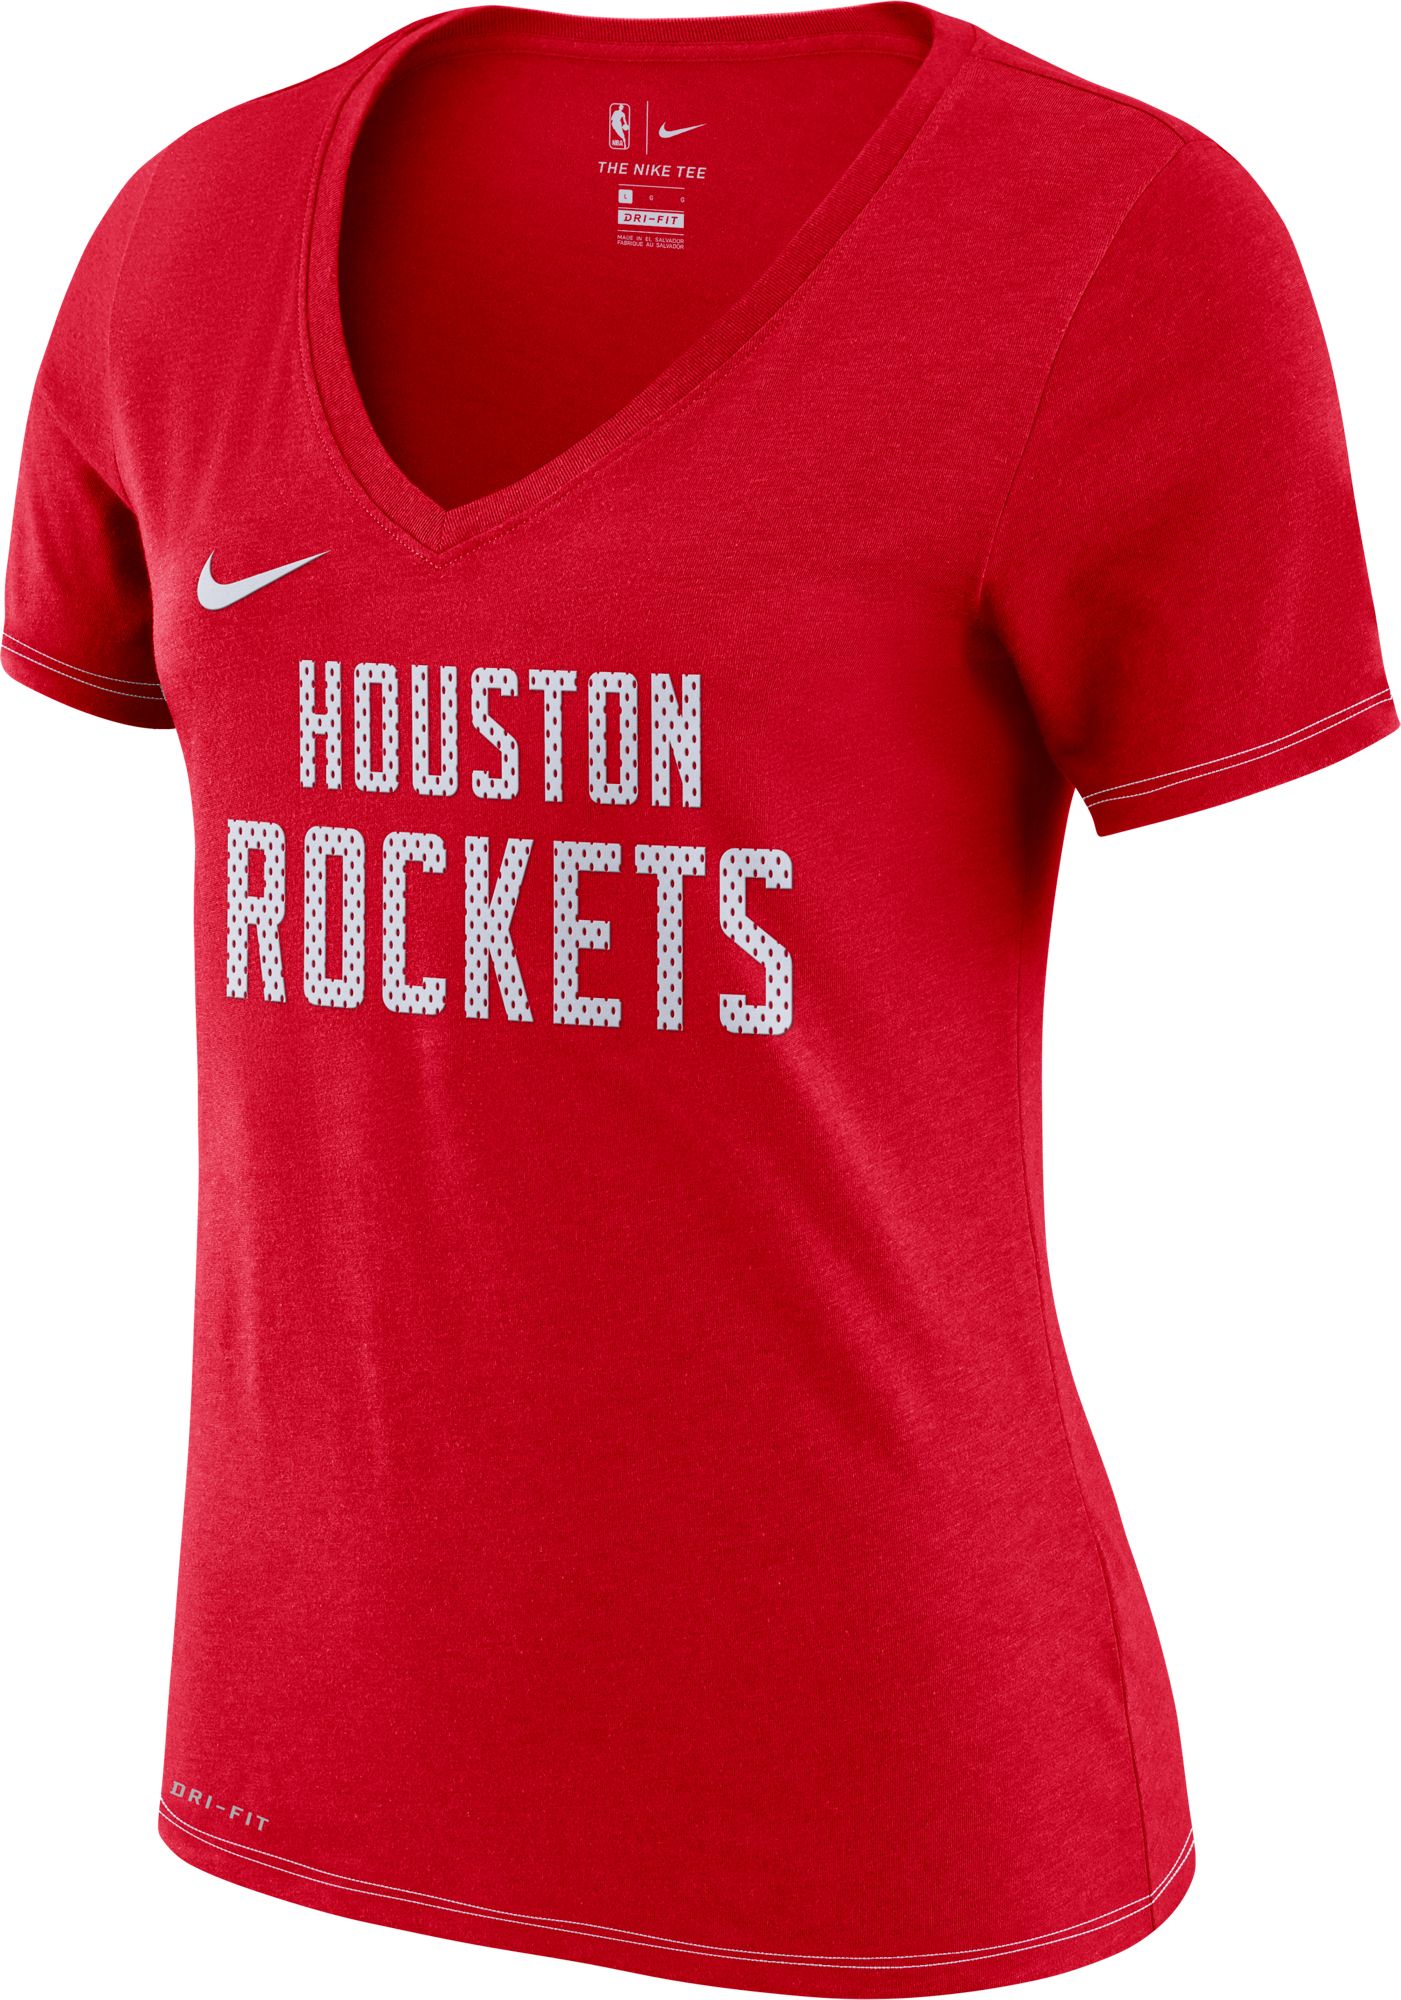 houston rockets women's apparel